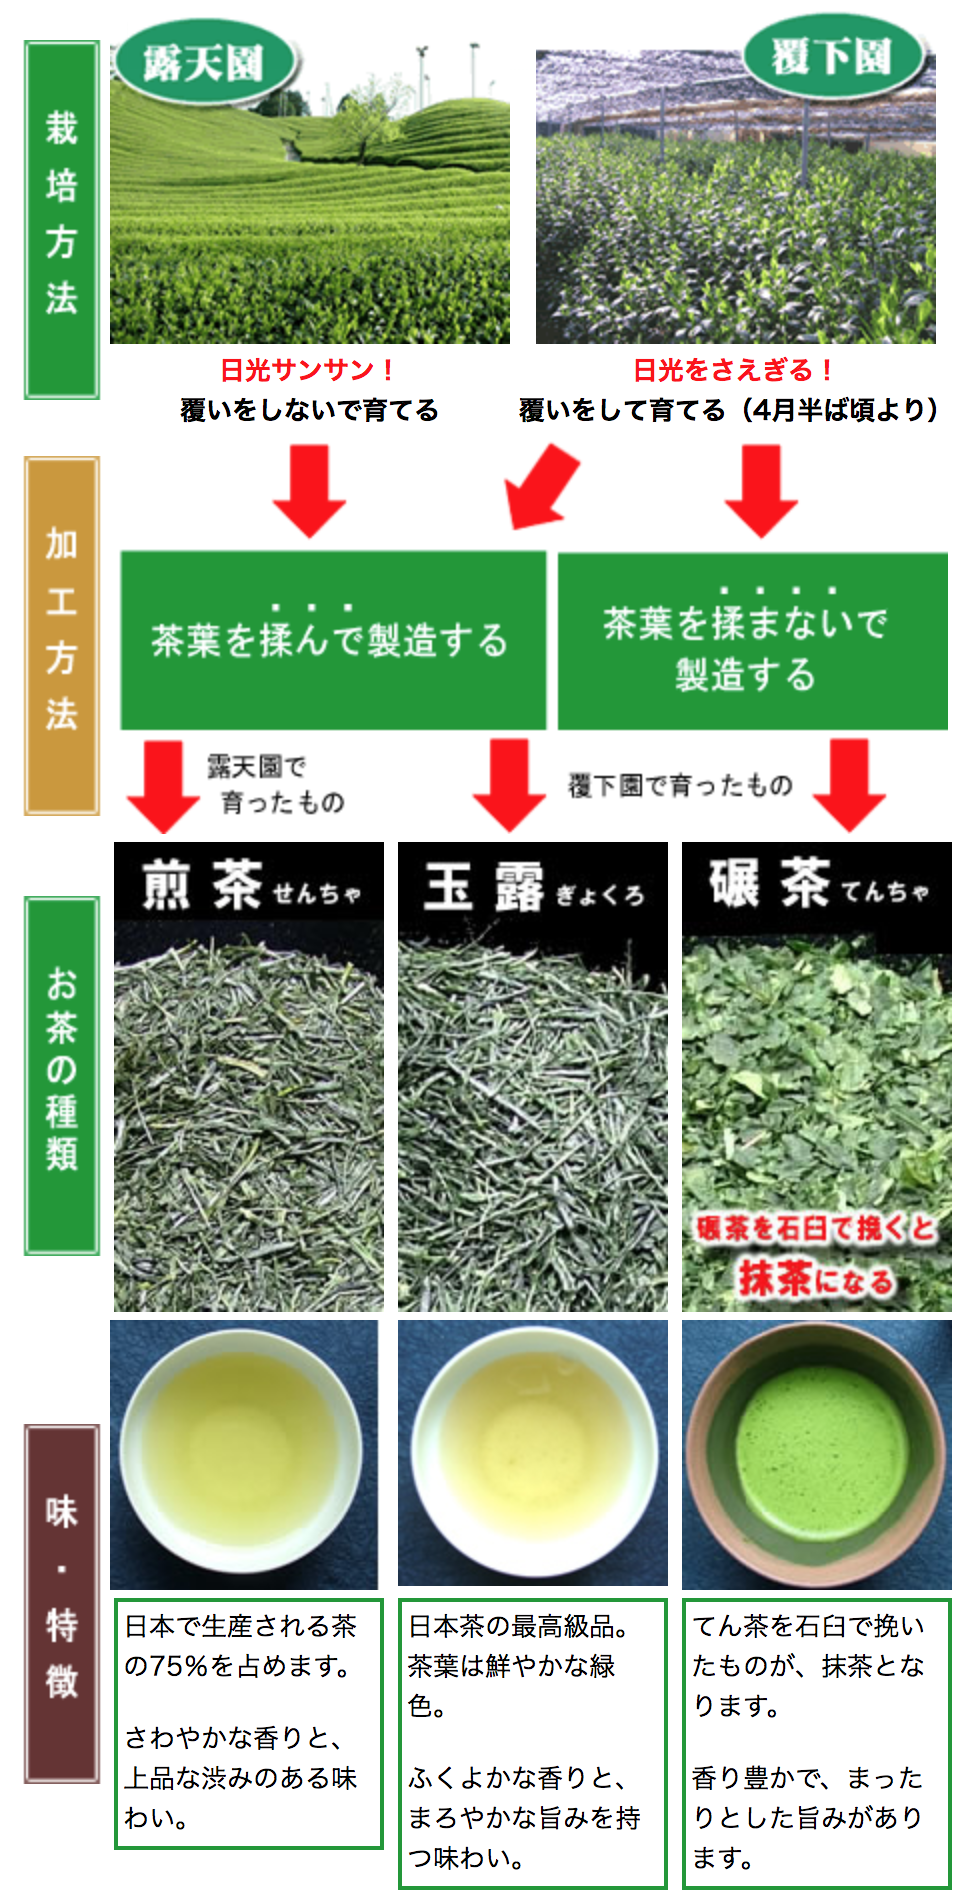 煎茶：日本で生産される茶の75％を占めます。さわやかな香りと、上品な渋みのある味わい。玉露：日本茶の最高級品。茶葉は鮮やかな緑色。ふくよかな香りと、まろやかな旨みを持つ味わい。碾茶：てん茶を石臼で挽いたものが、抹茶となります。香り豊かで、まったりとした旨みがあります。